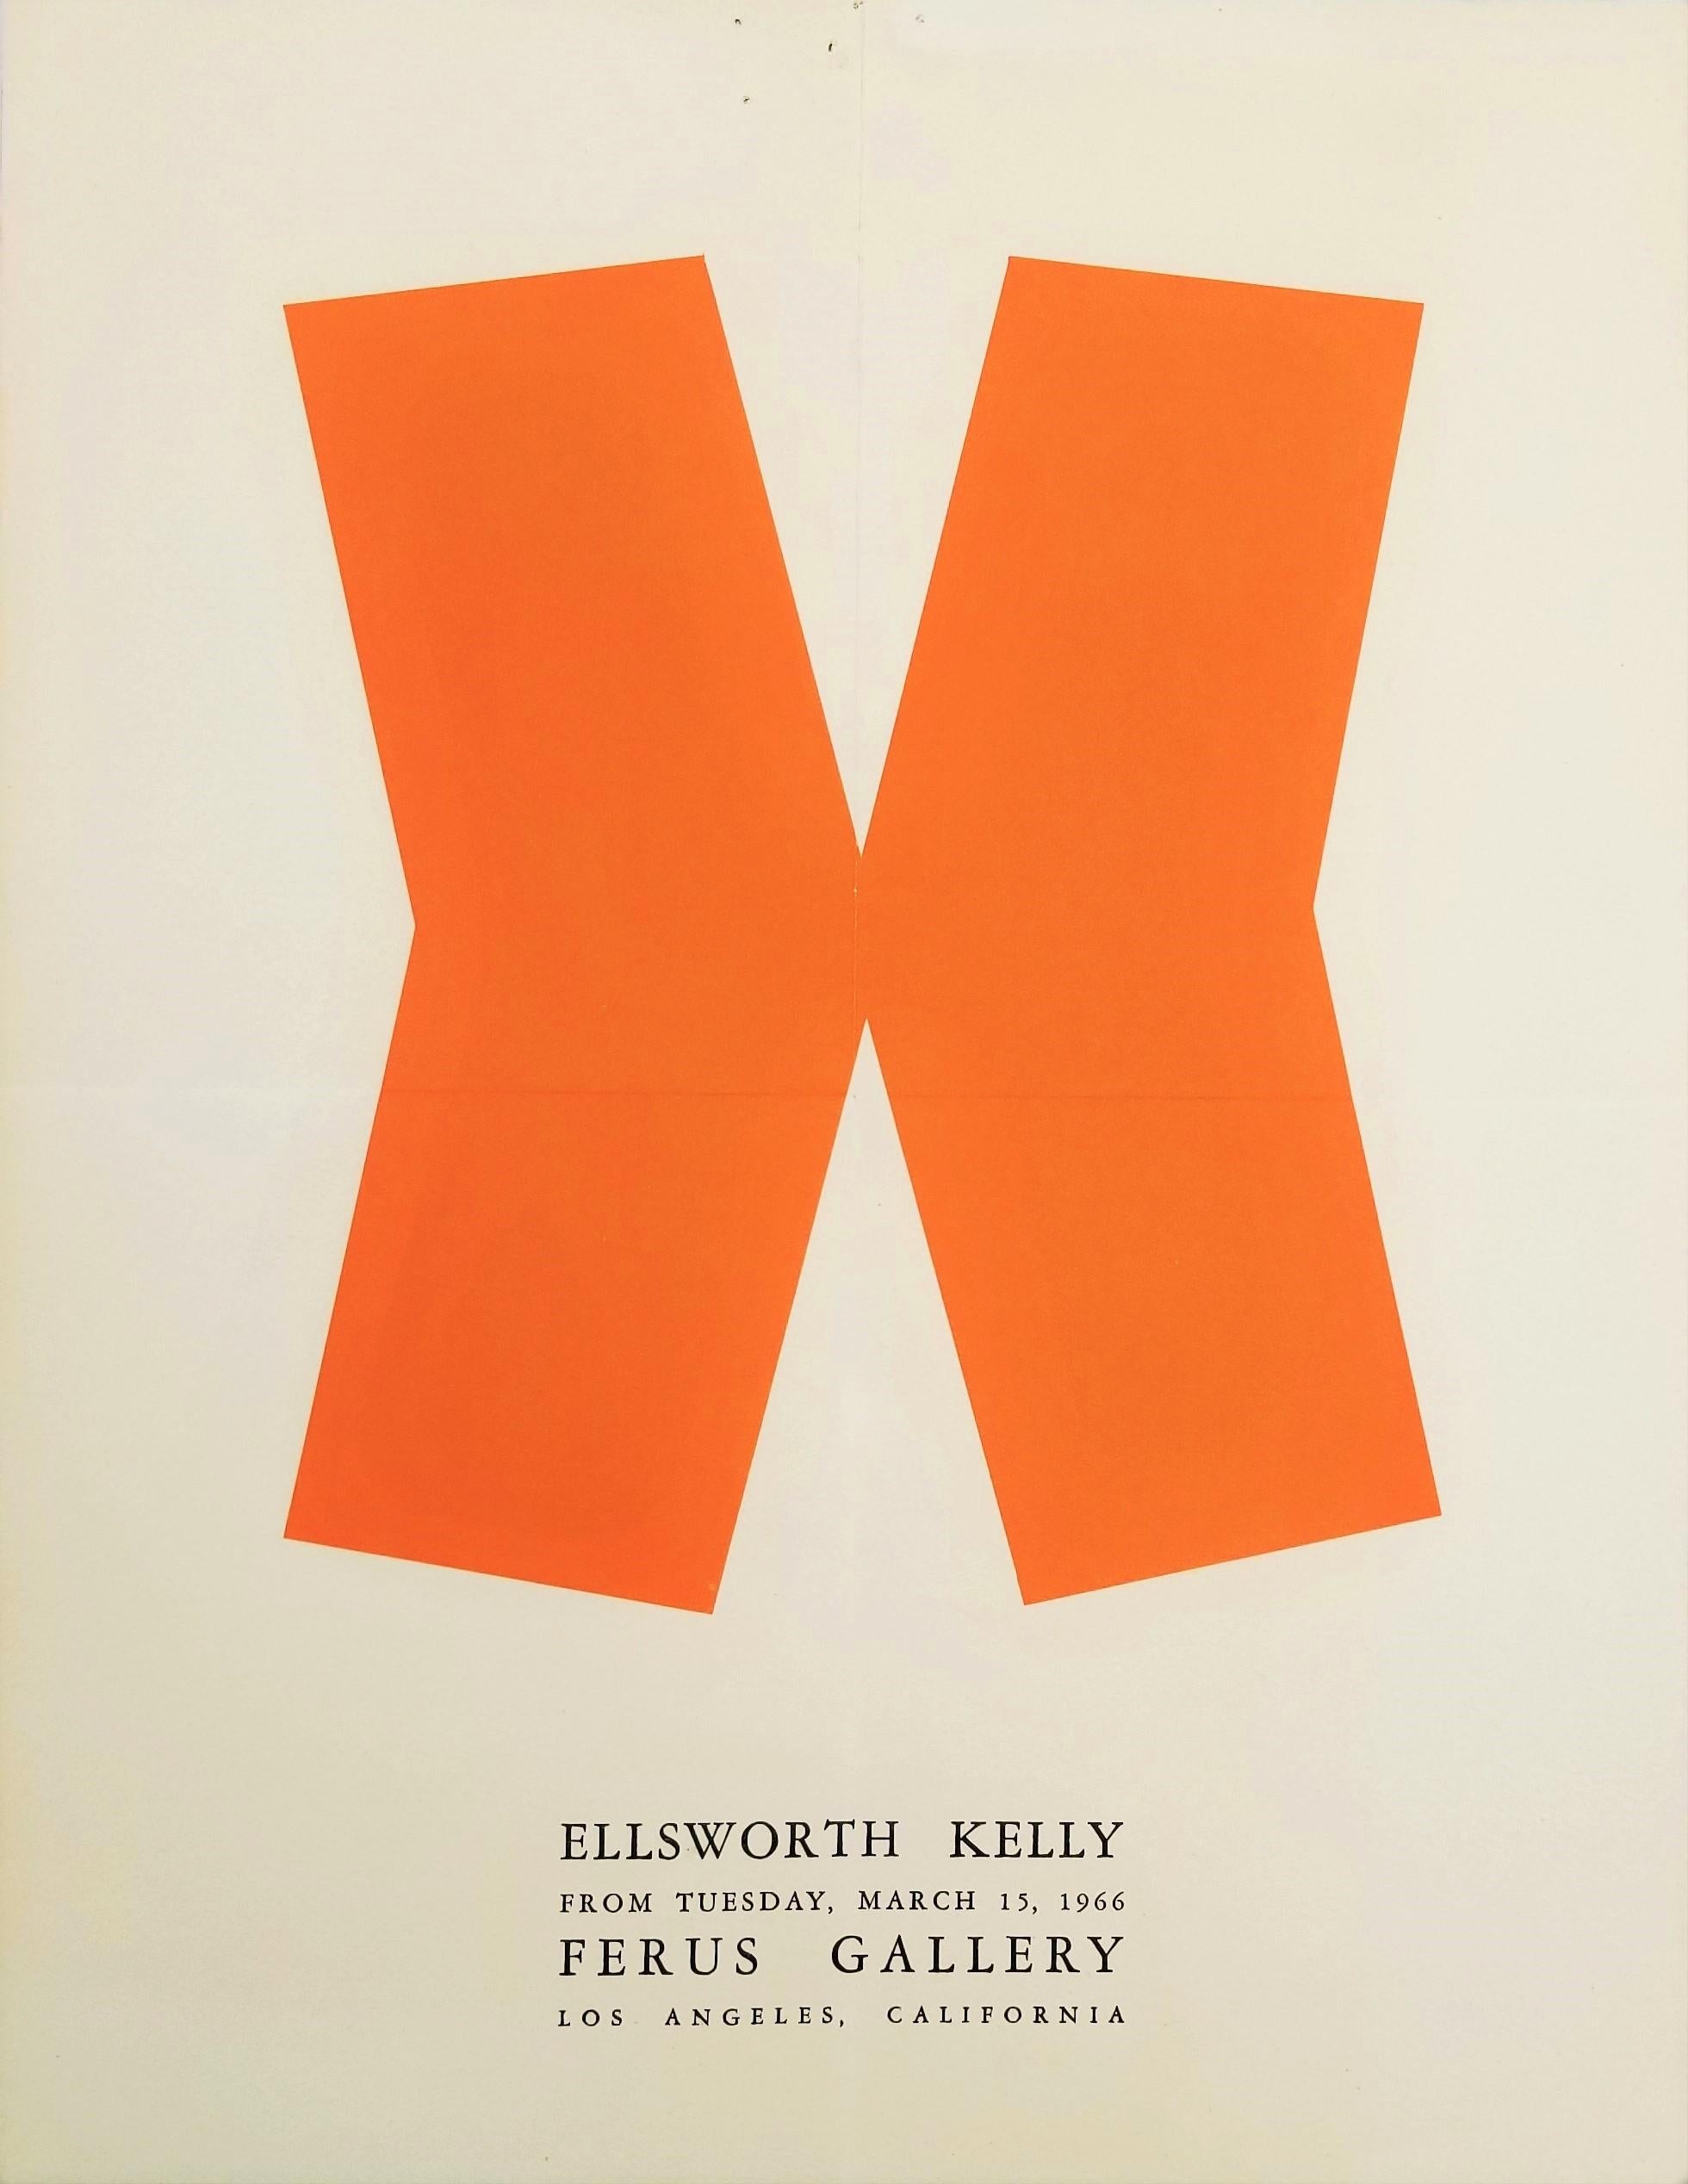 Artistics : (d'après) Ellsworth Kelly (Américain, 1923-2015)
Titre : "Ellsworth Kelly : Ferus Gallery (a) Gallery"
Année : 1966
Support : Lithographie originale, affiche d'exposition sur papier vélin crème
Edition limitée : Inconnu
Imprimante :